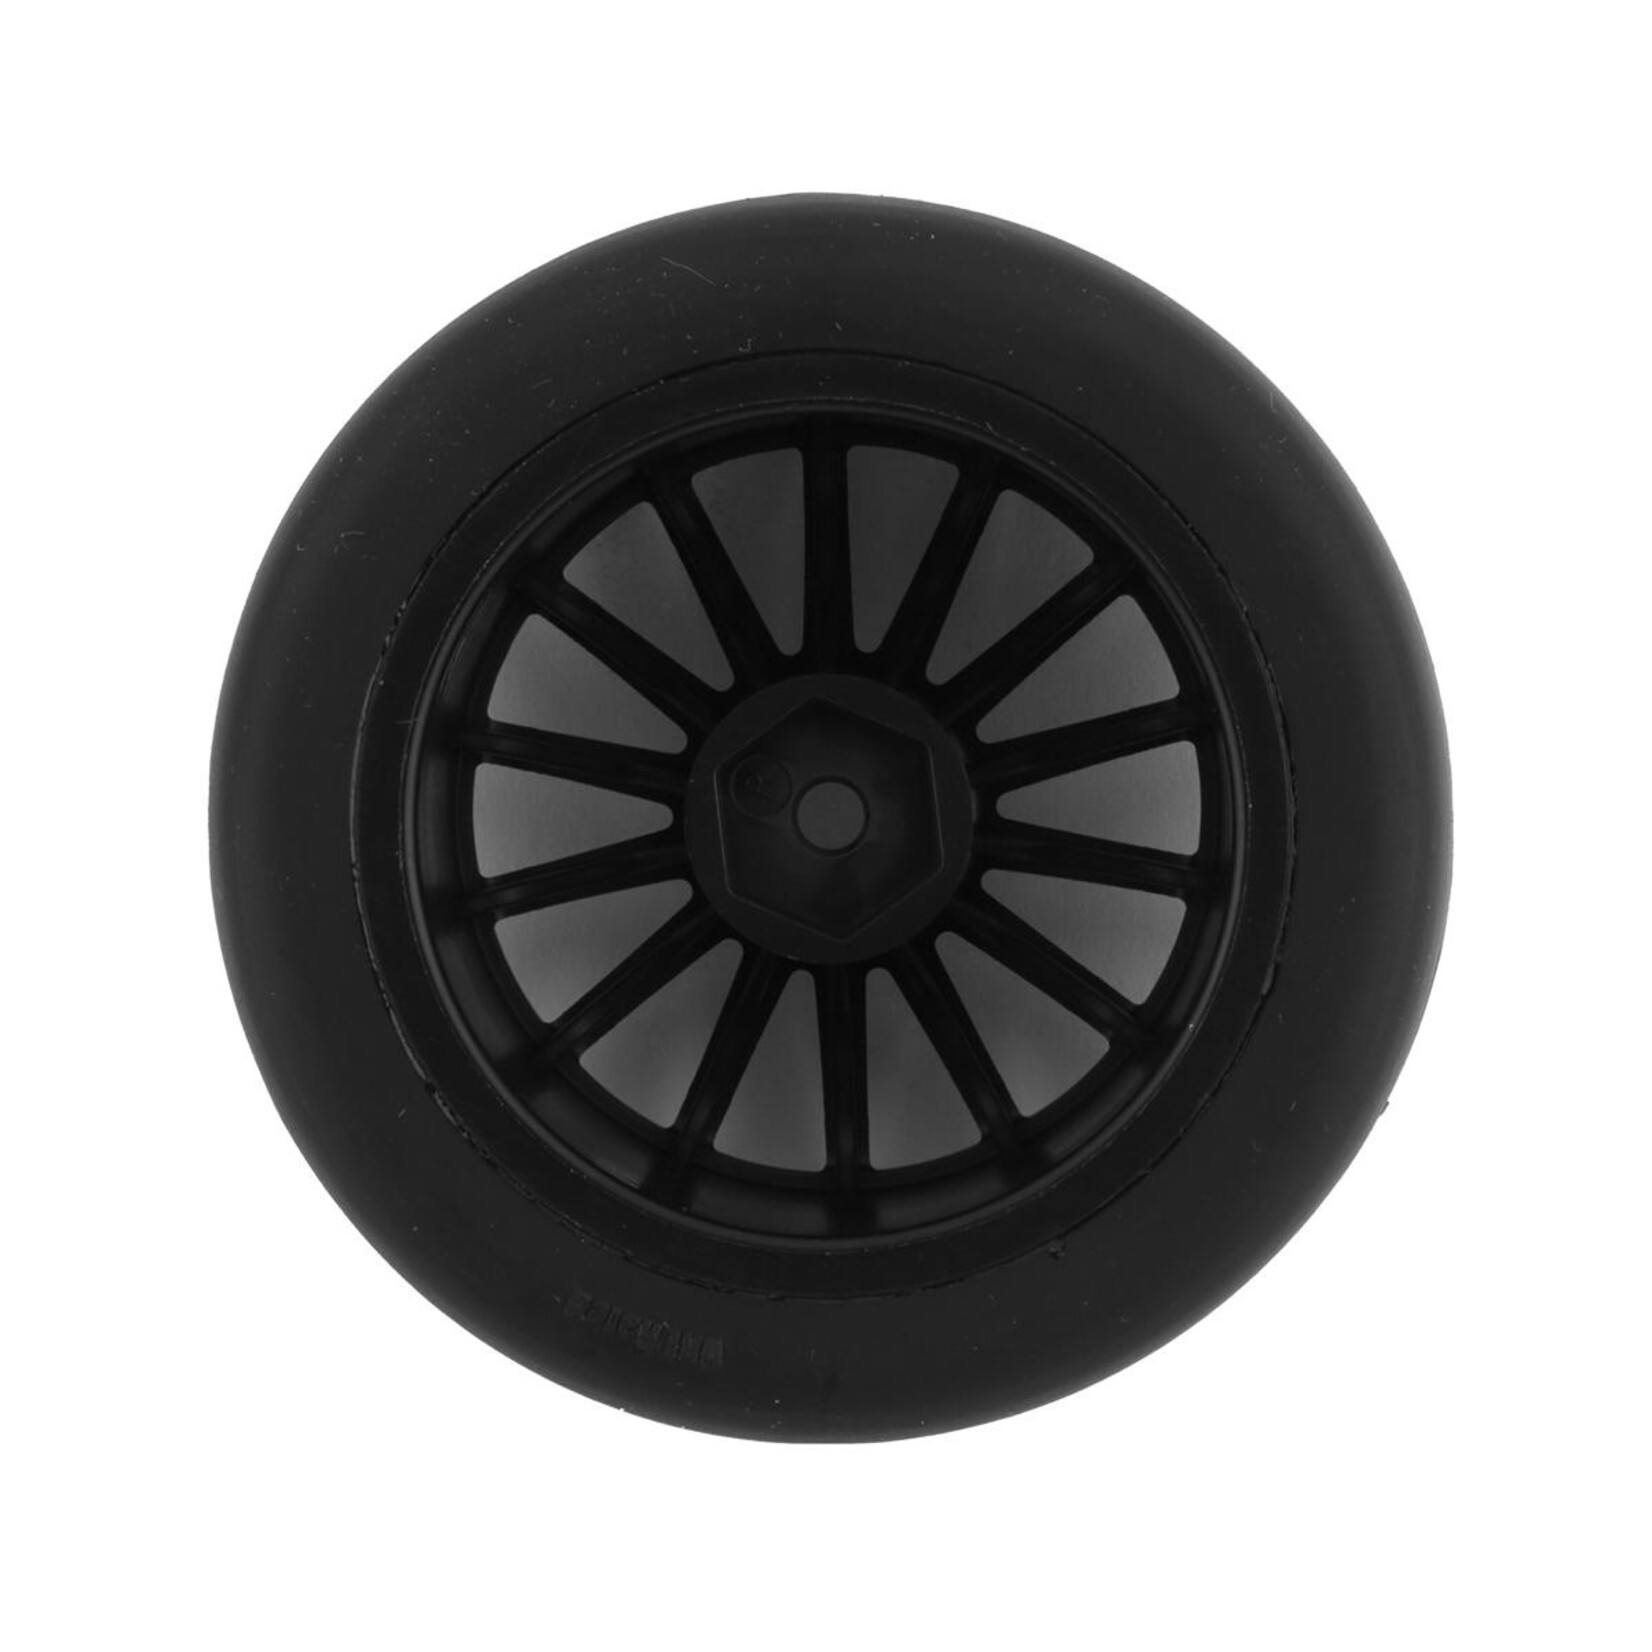 Traxxas Traxxas Sticky 2.0" Response Pre-Mounted Tires w/Multi-Spoke Wheels (Satin Chrome) (2) (Rear) (VXL) #9375R